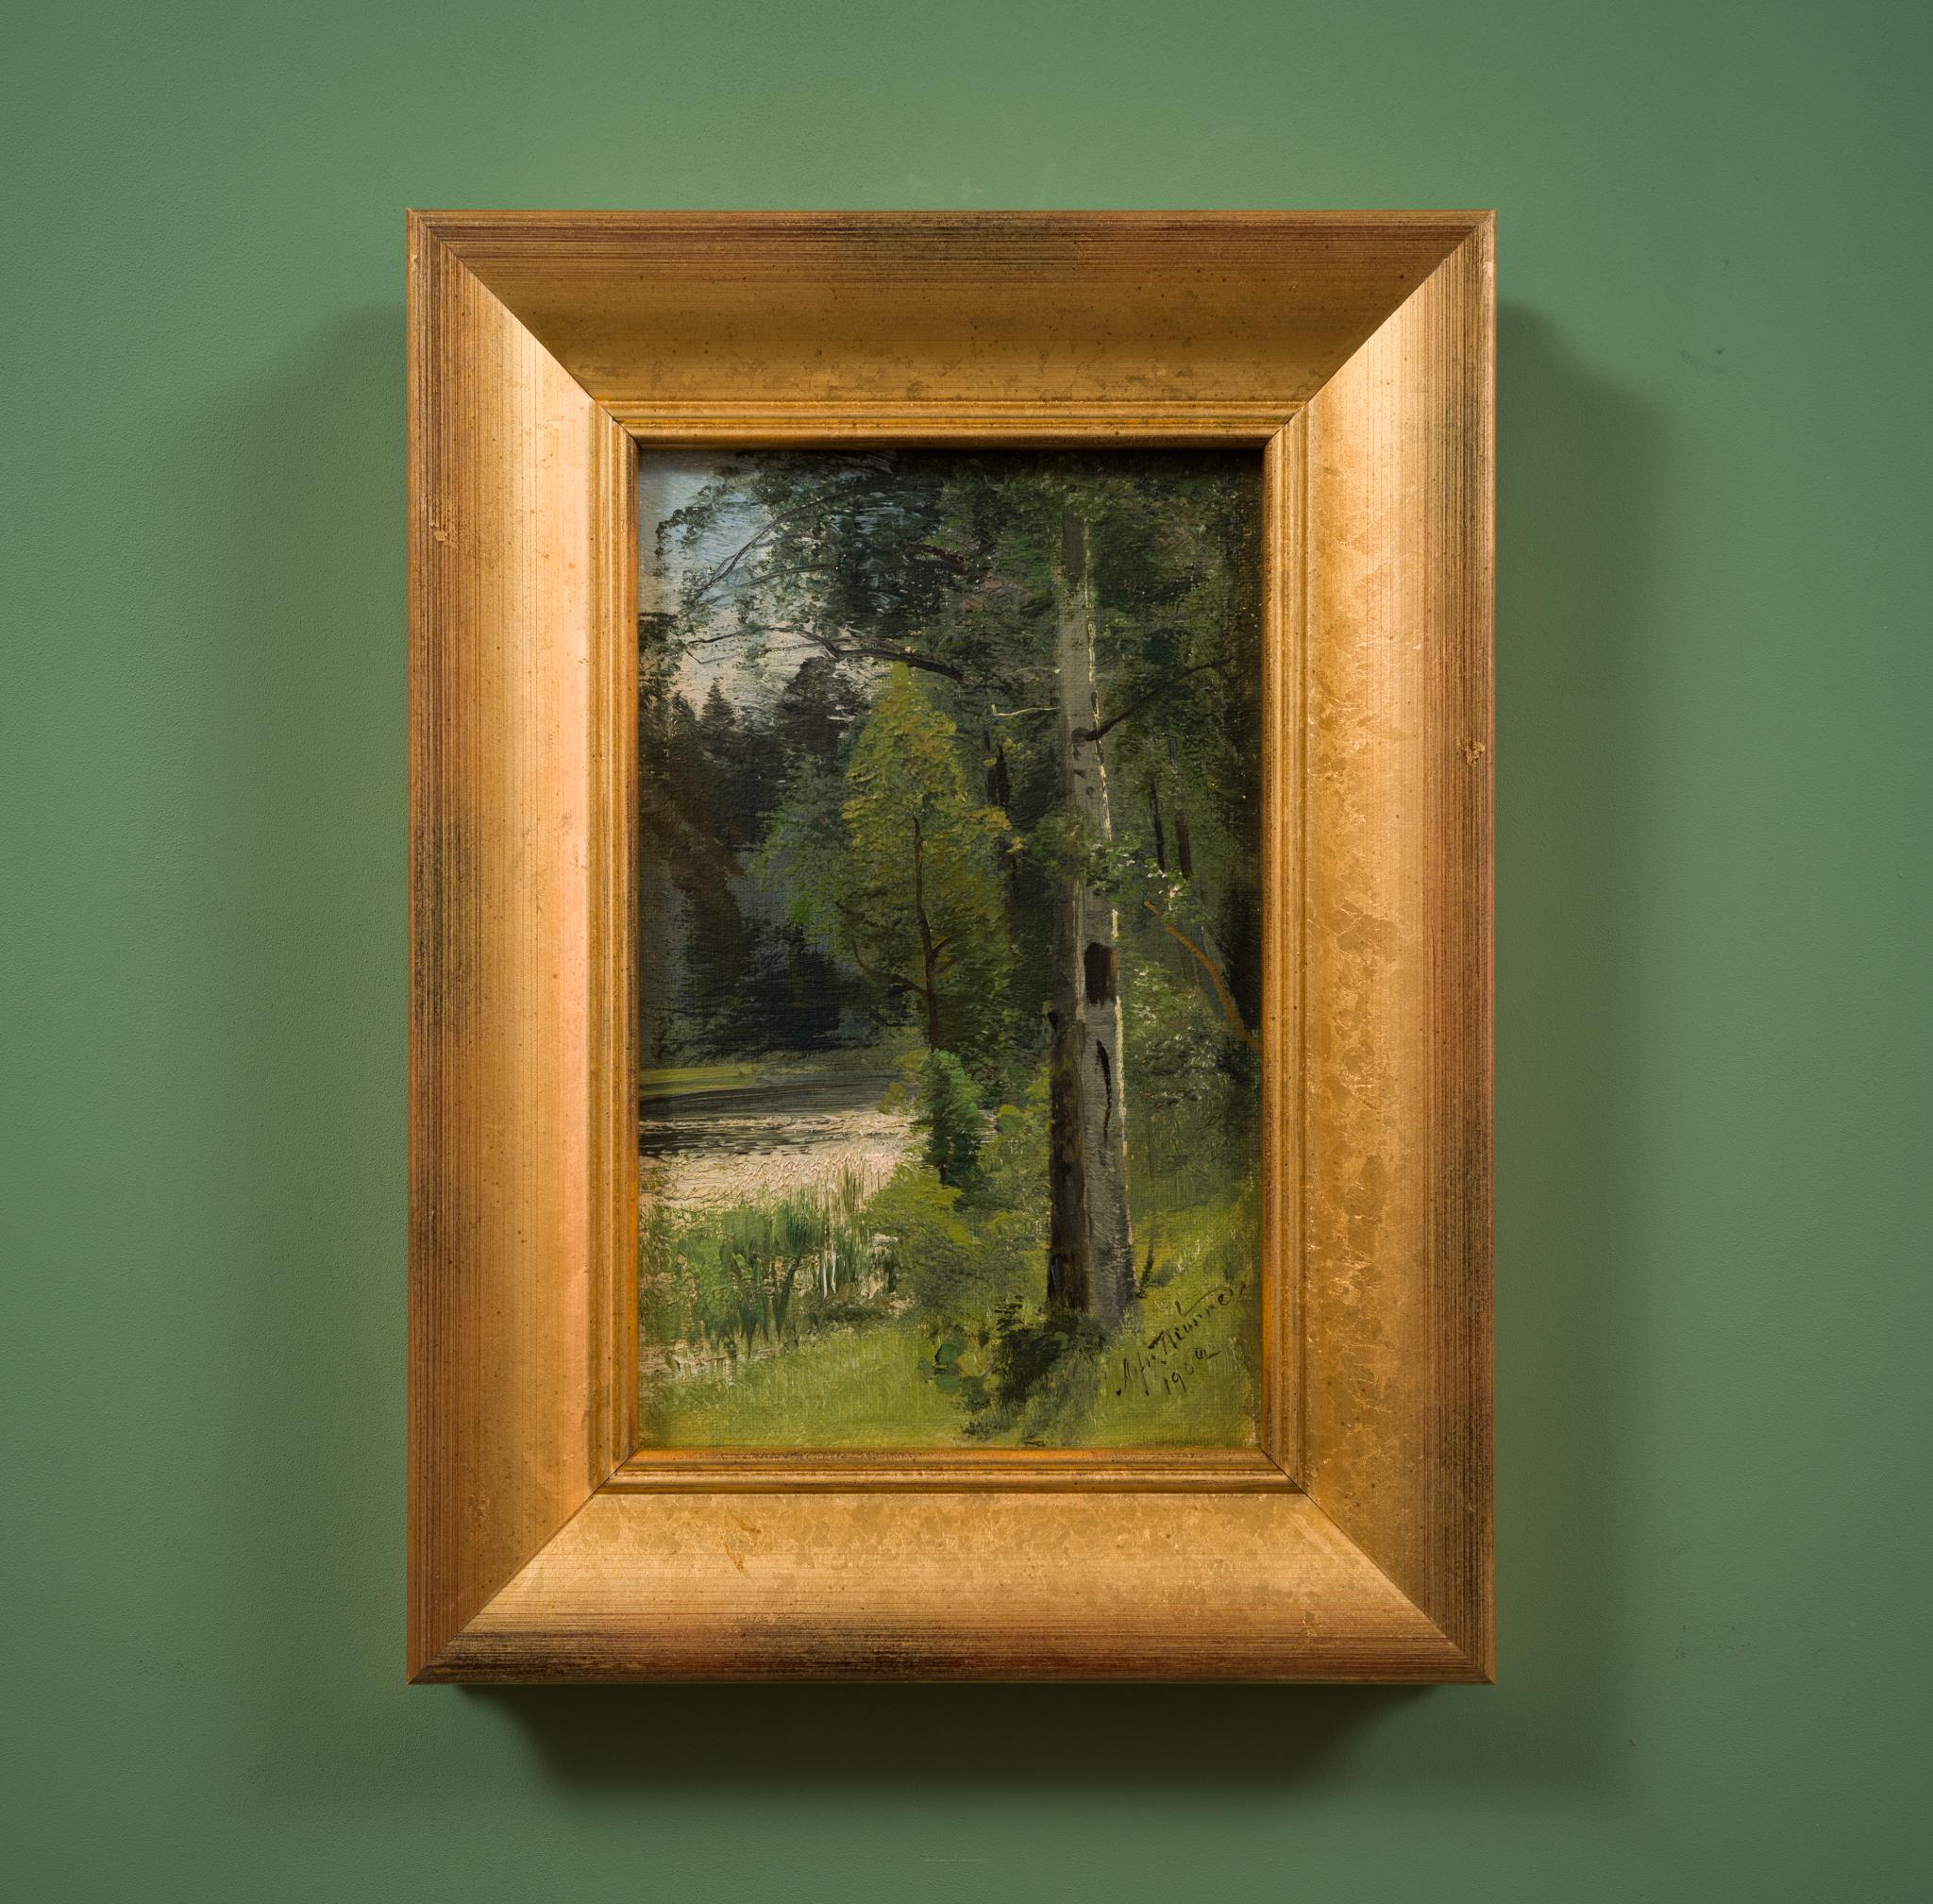 Ce tableau enchanteur d'Alfred Thörne, intitulé Bouleaux au bord d'un ruisseau, capture la beauté sereine d'une petite scène forestière, mesurant seulement 27 x 17 cm. L'œuvre témoigne de la fascination de Thörne pour la nature, en particulier pour